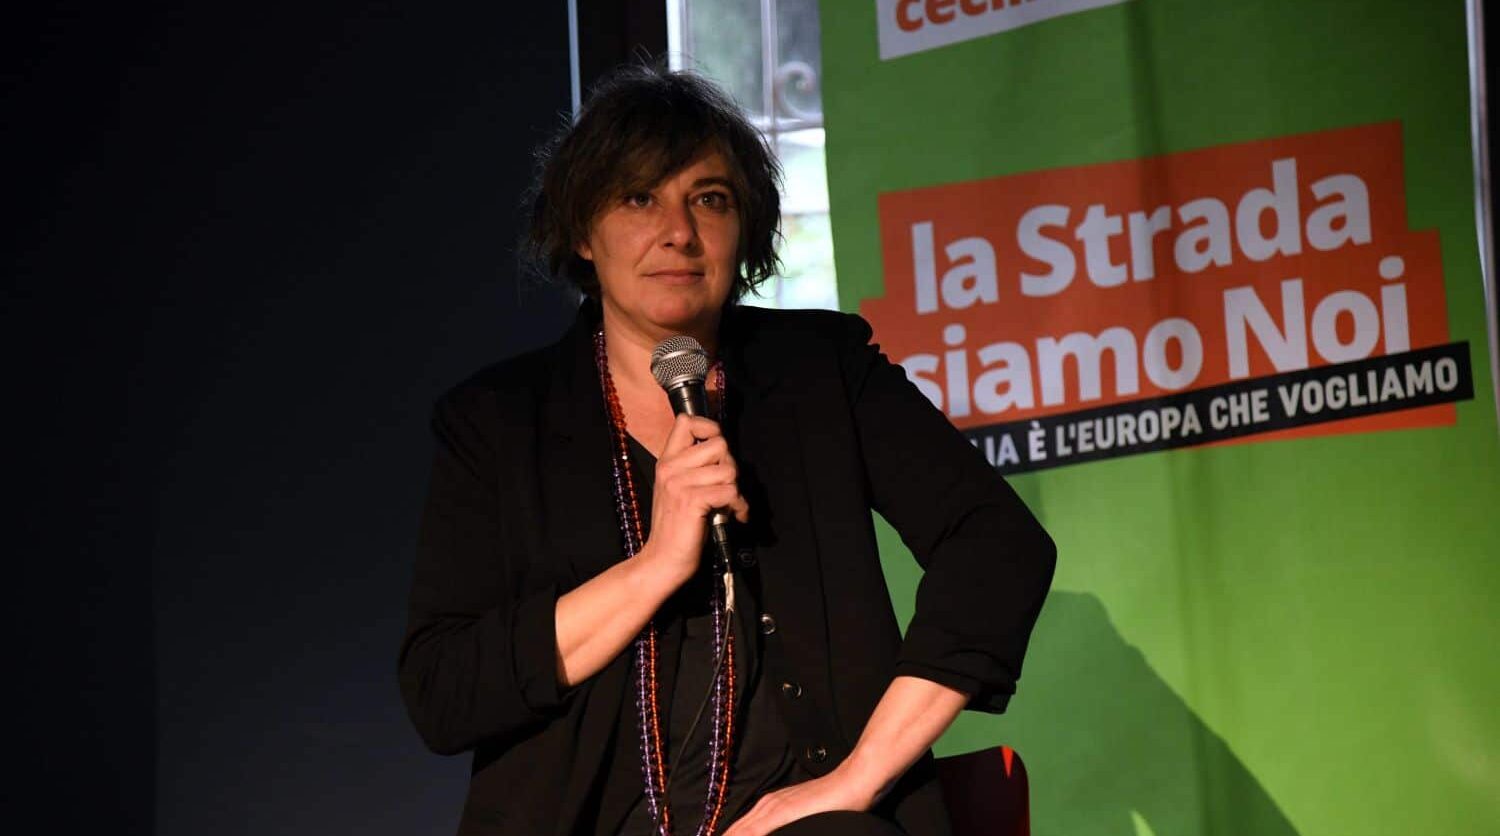 Cecilia Strada: “In Europa per costruire la pace. Torniamo a parlare di disarmo”